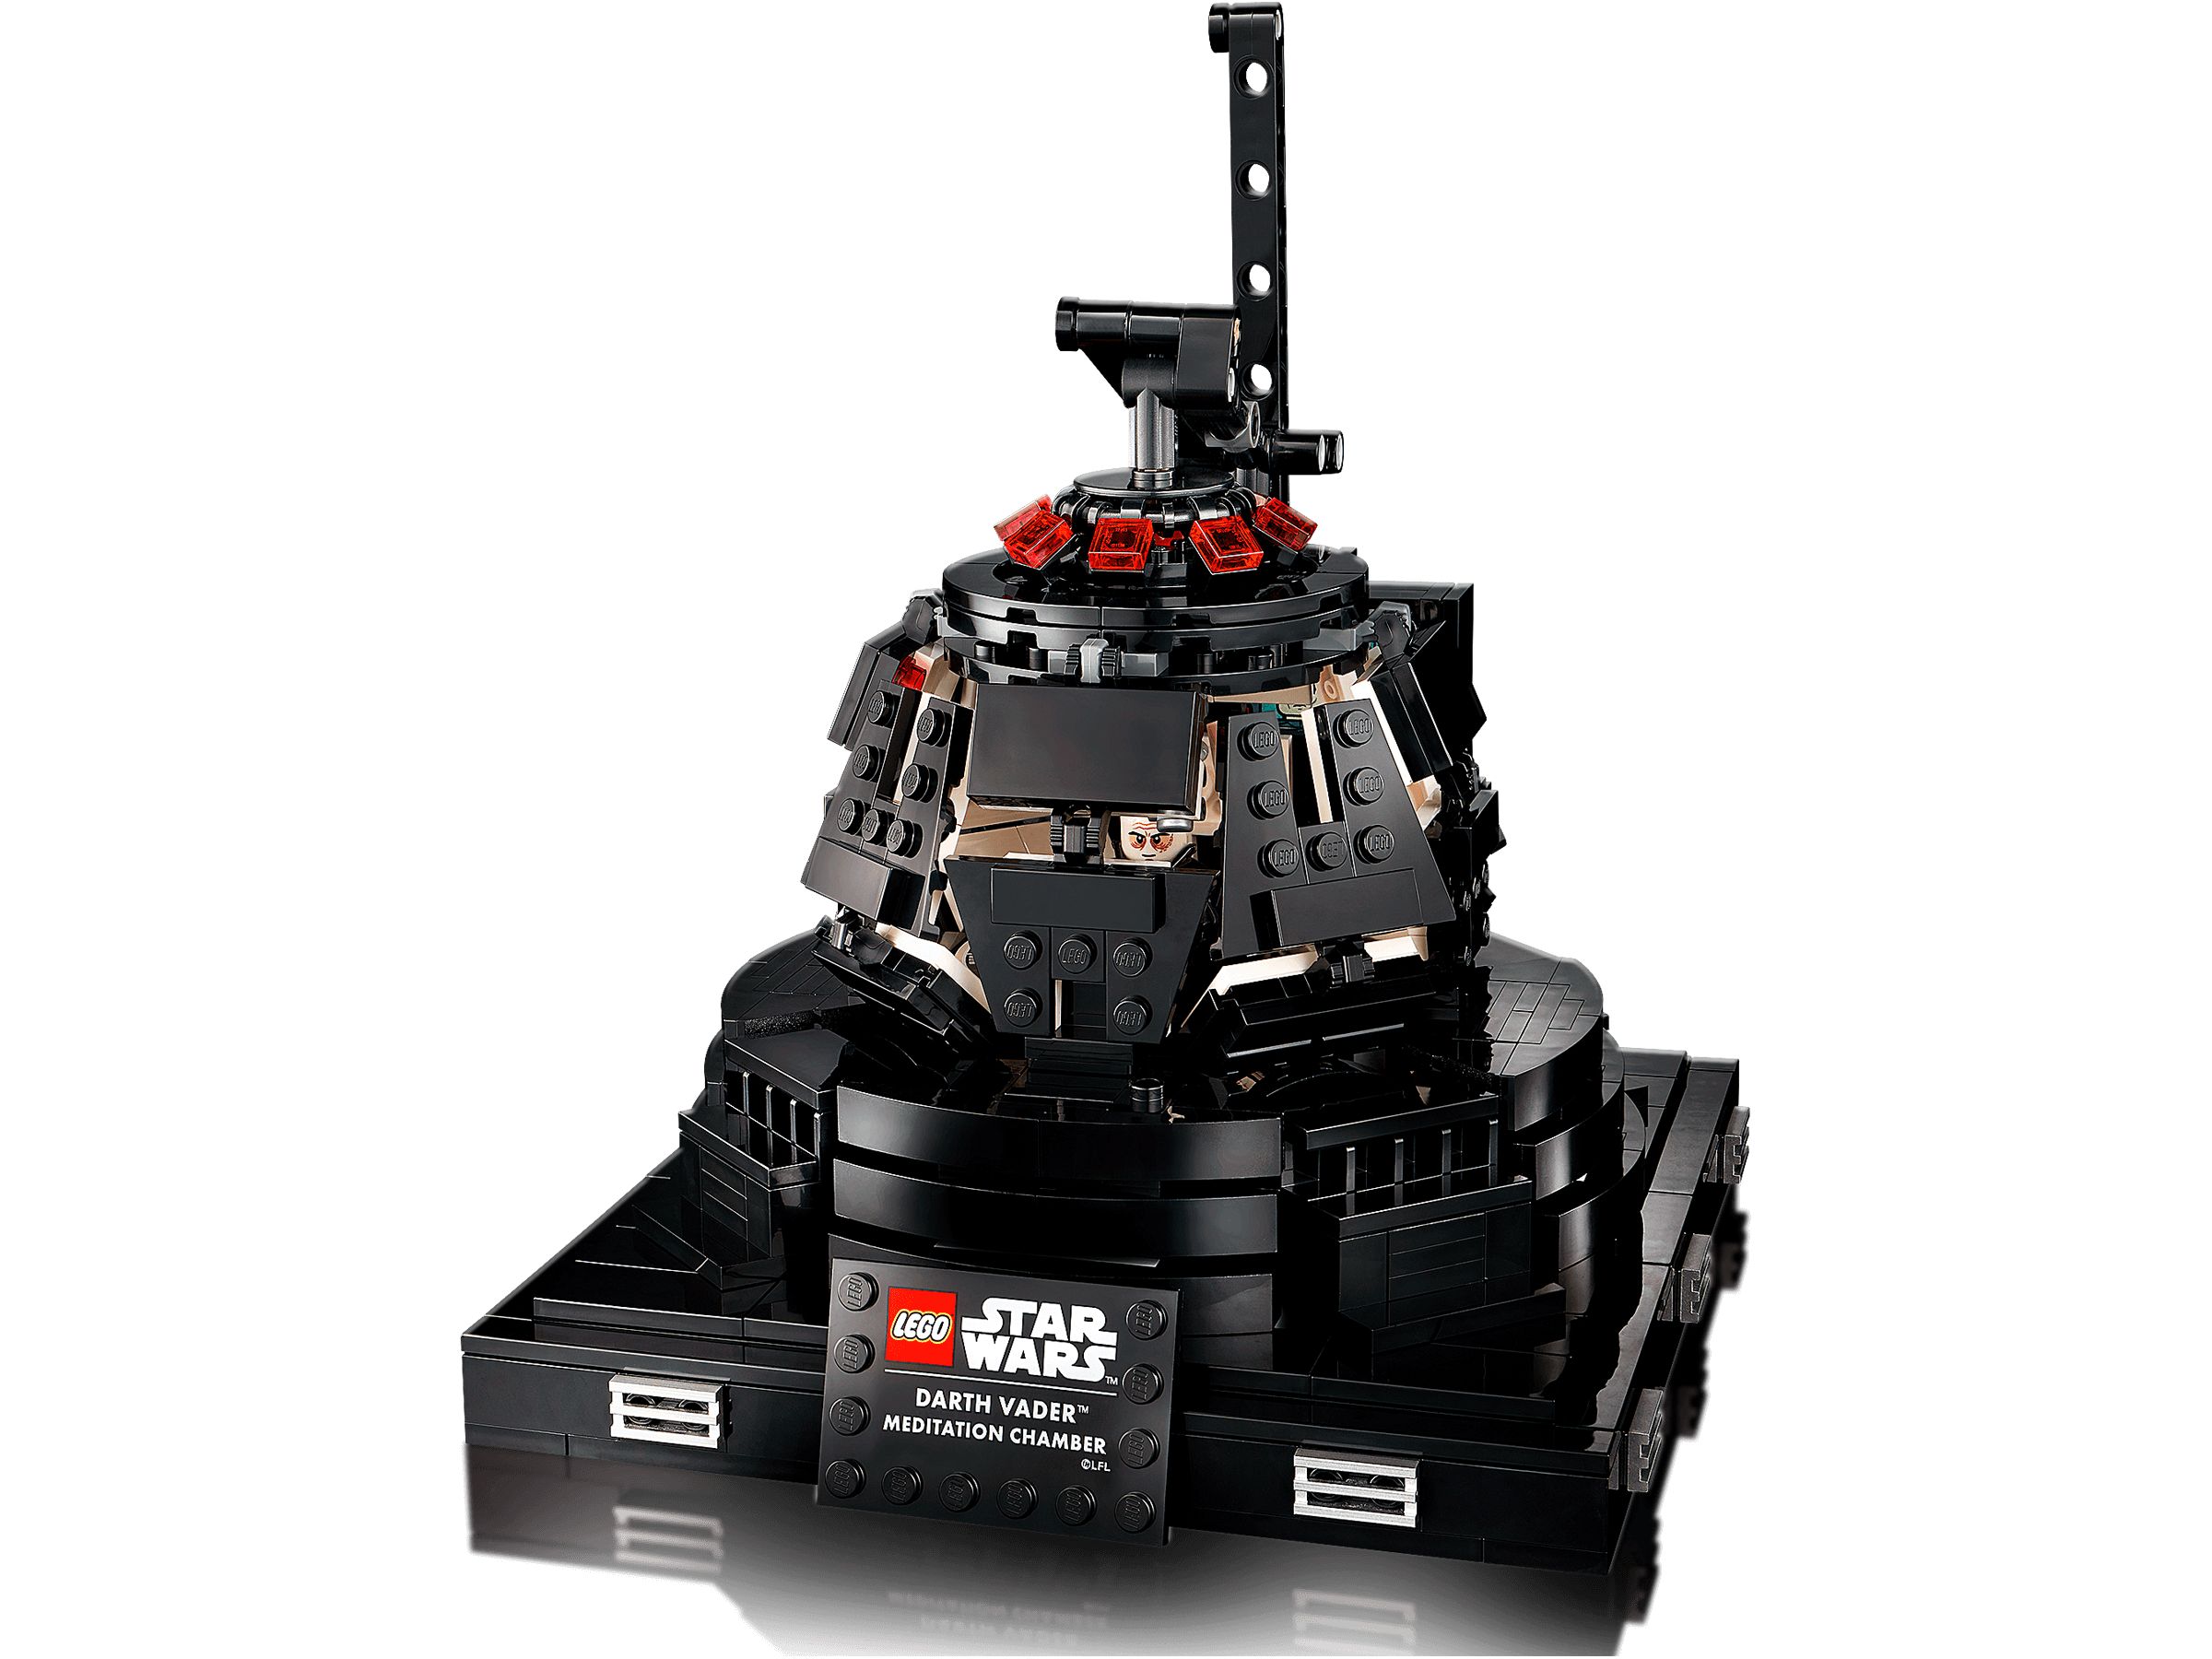 LEGO Star Wars 75296 Darth Vader™ Meditationskammer LEGO_75296_alt3.jpg